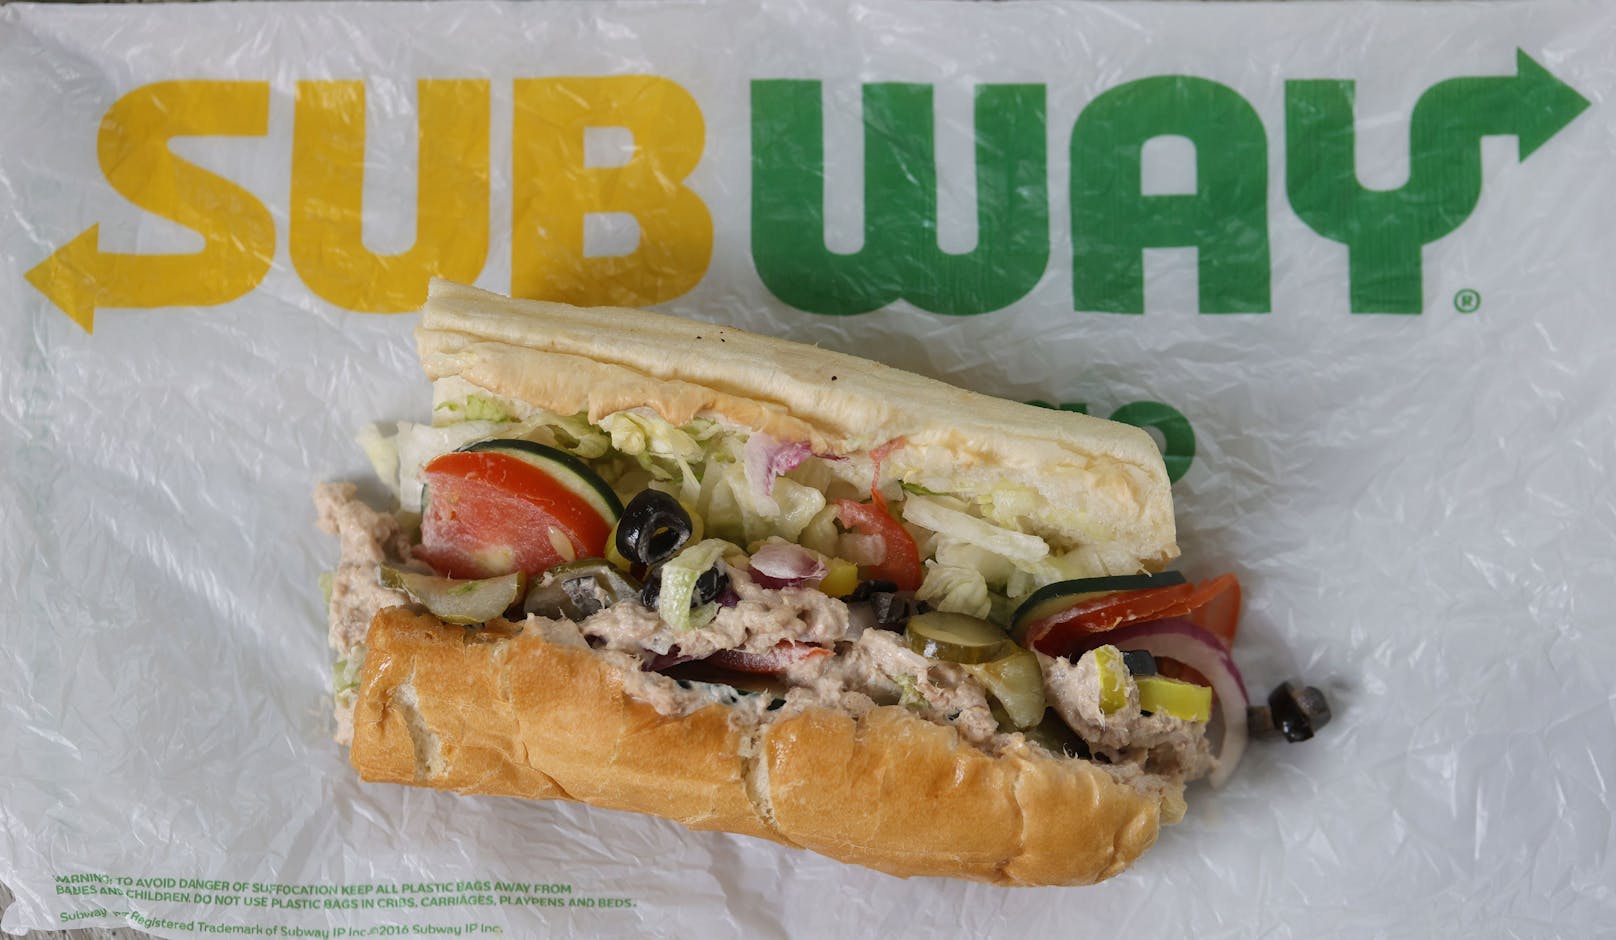 Eine Frage bewegt derzeit die <strong>Subway</strong>-Kunden: Warum ist im Thunfisch-Sandwich kein Thunfisch?